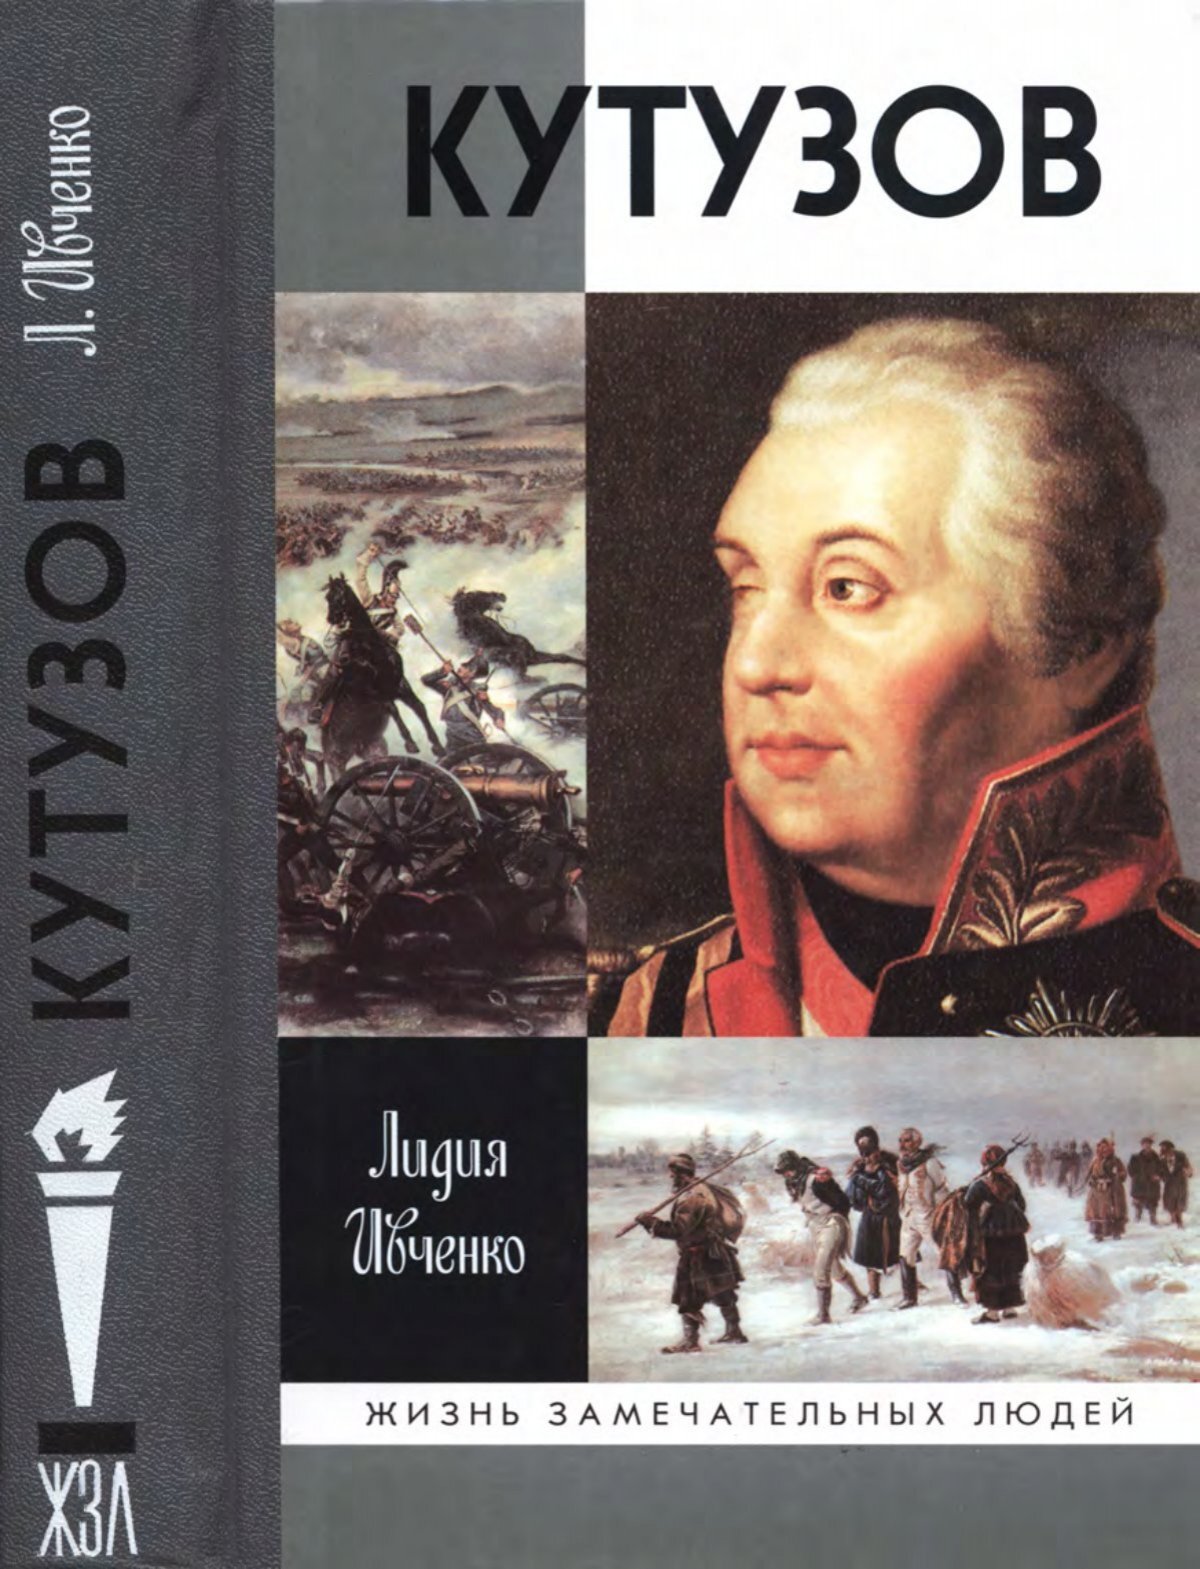 Реферат: Военно-боевая деятельность М.И. Кутузова в Отечественной войне 1812 года по письмам и запискам